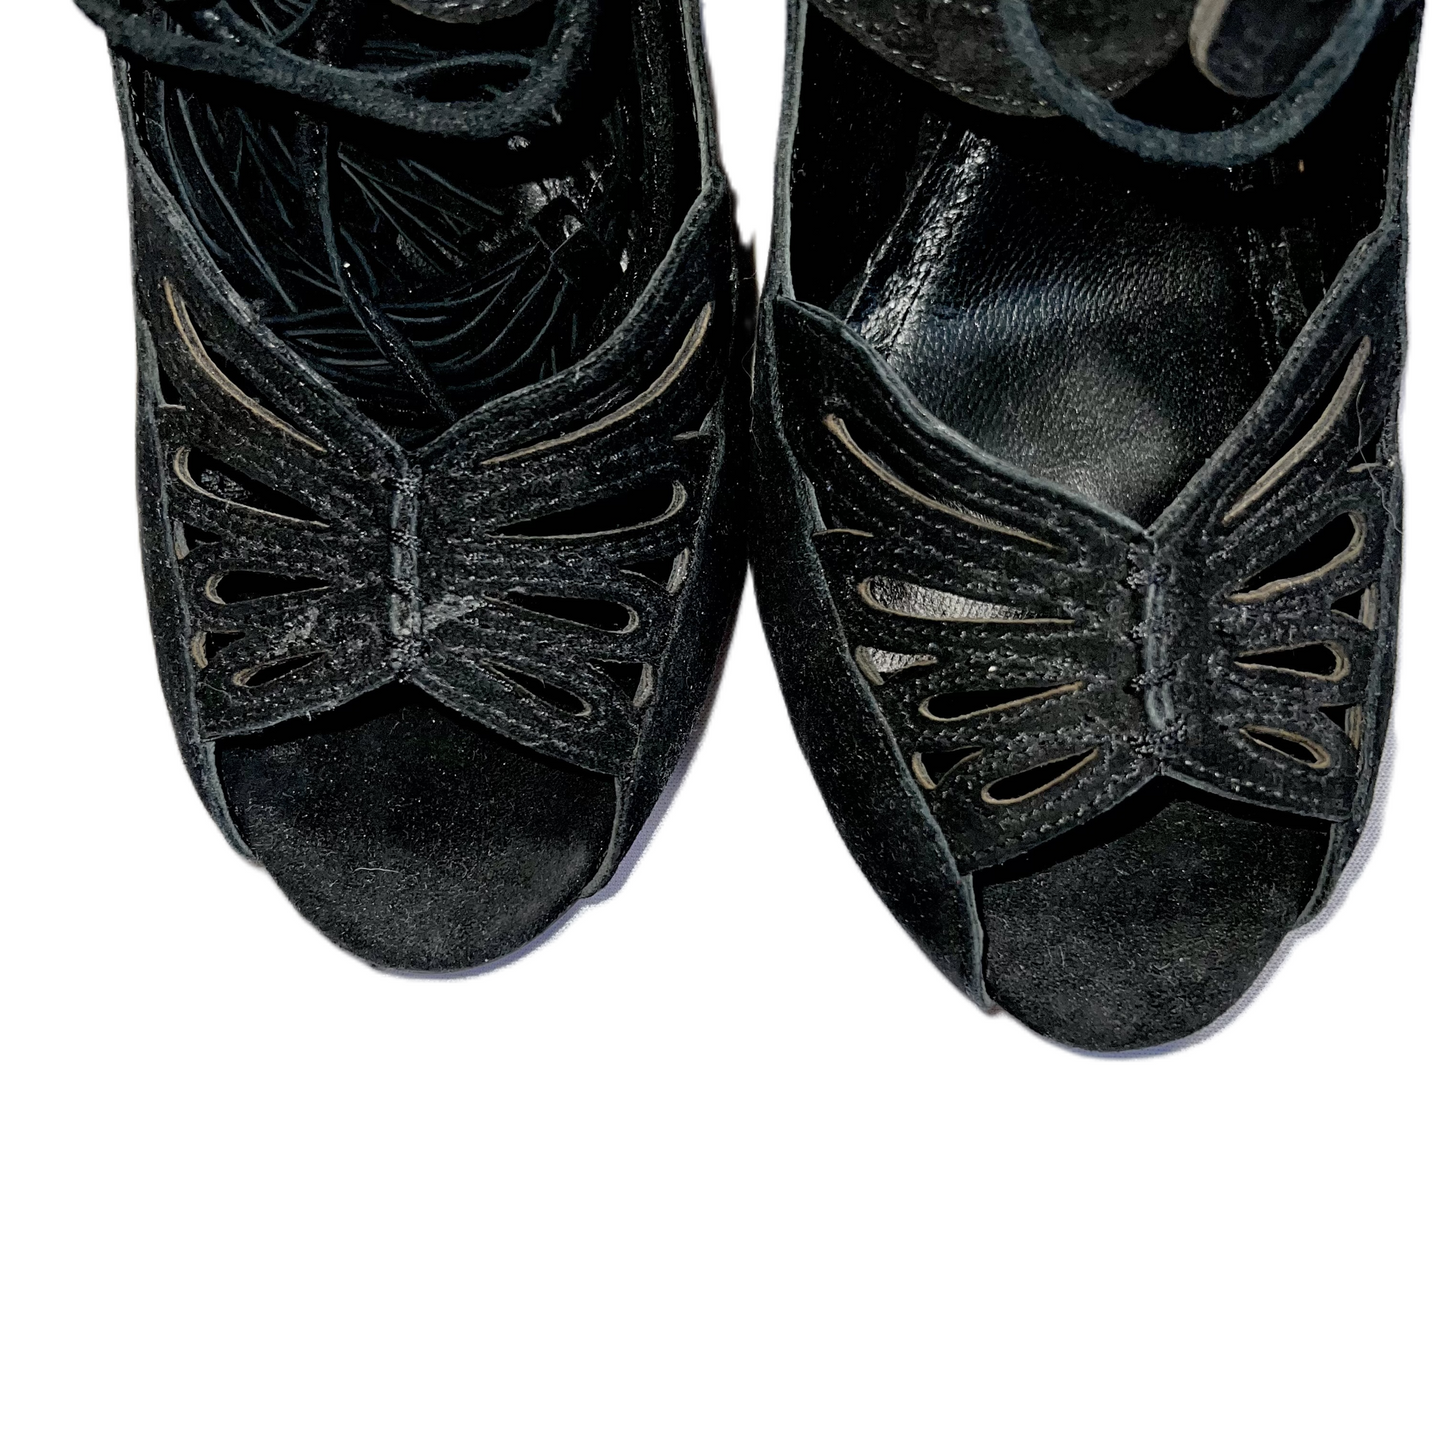 Black Shoes Designer By Alice + Olivia, Size: 6.5